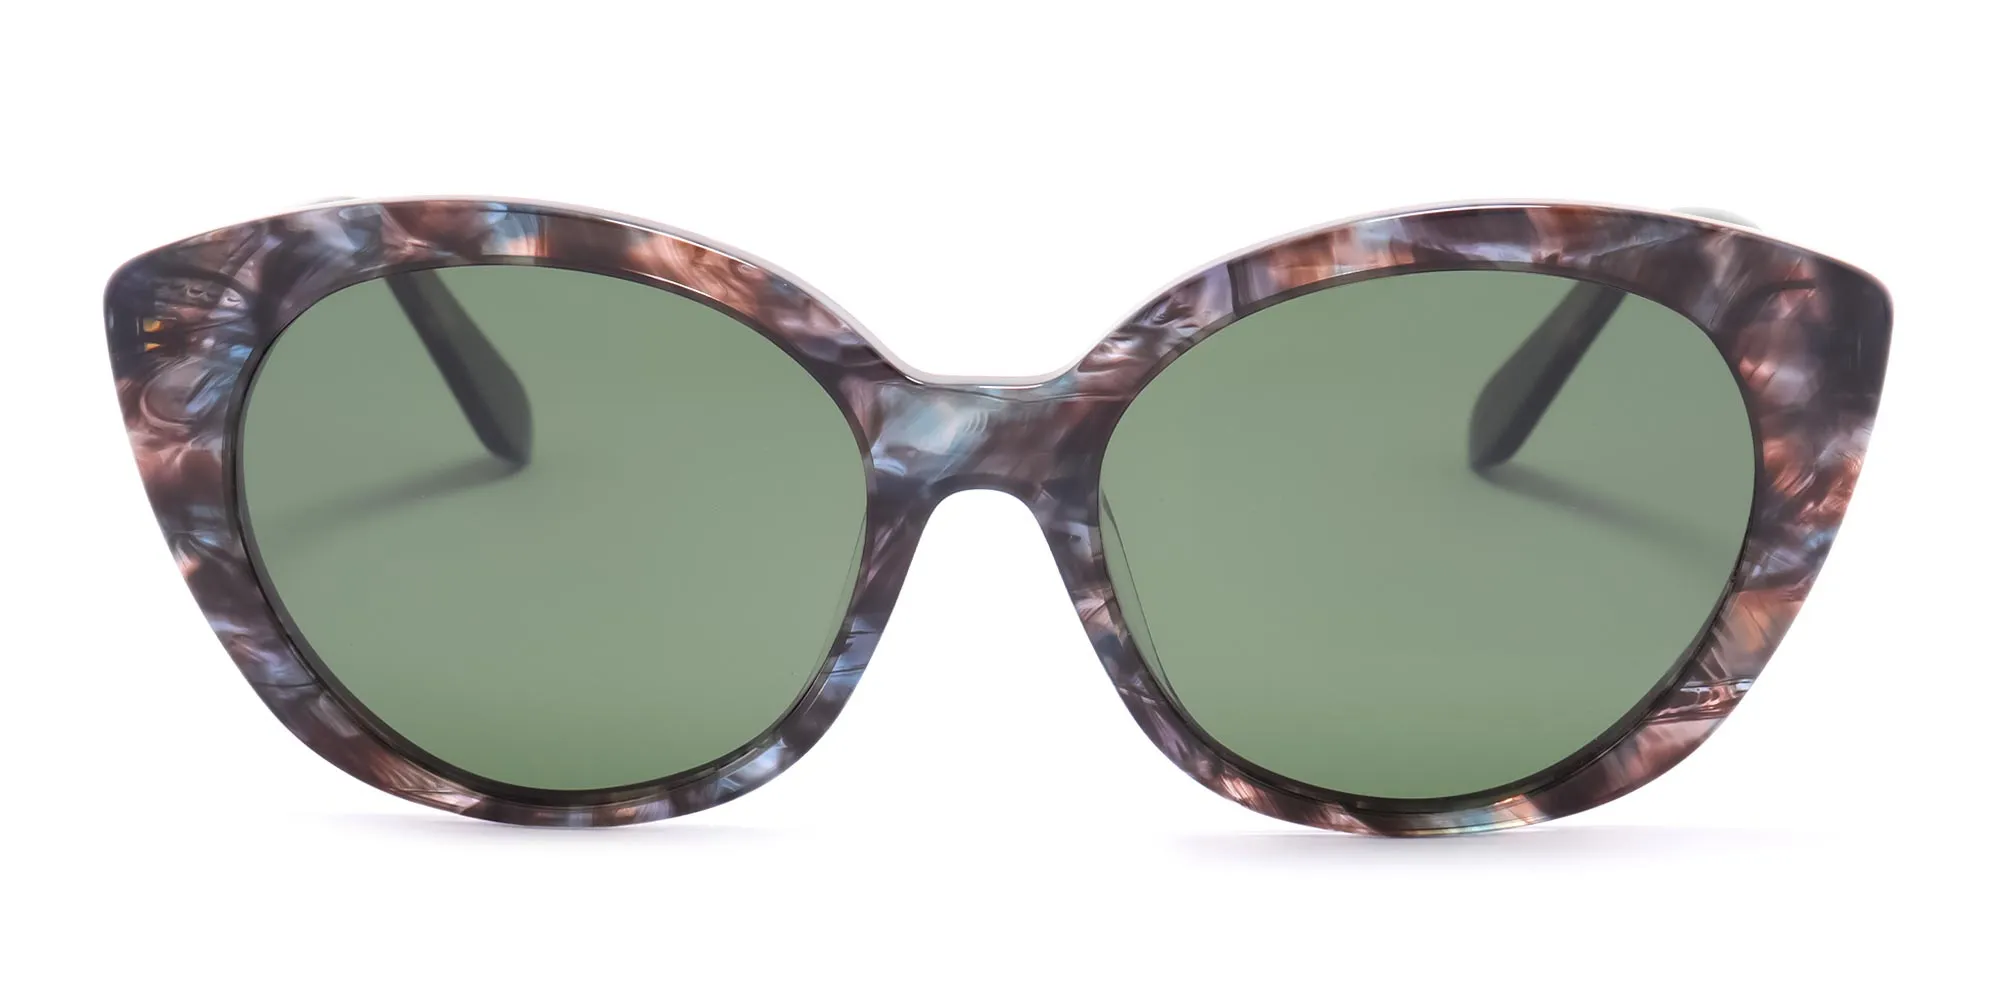 green tortoise shell glasses-2